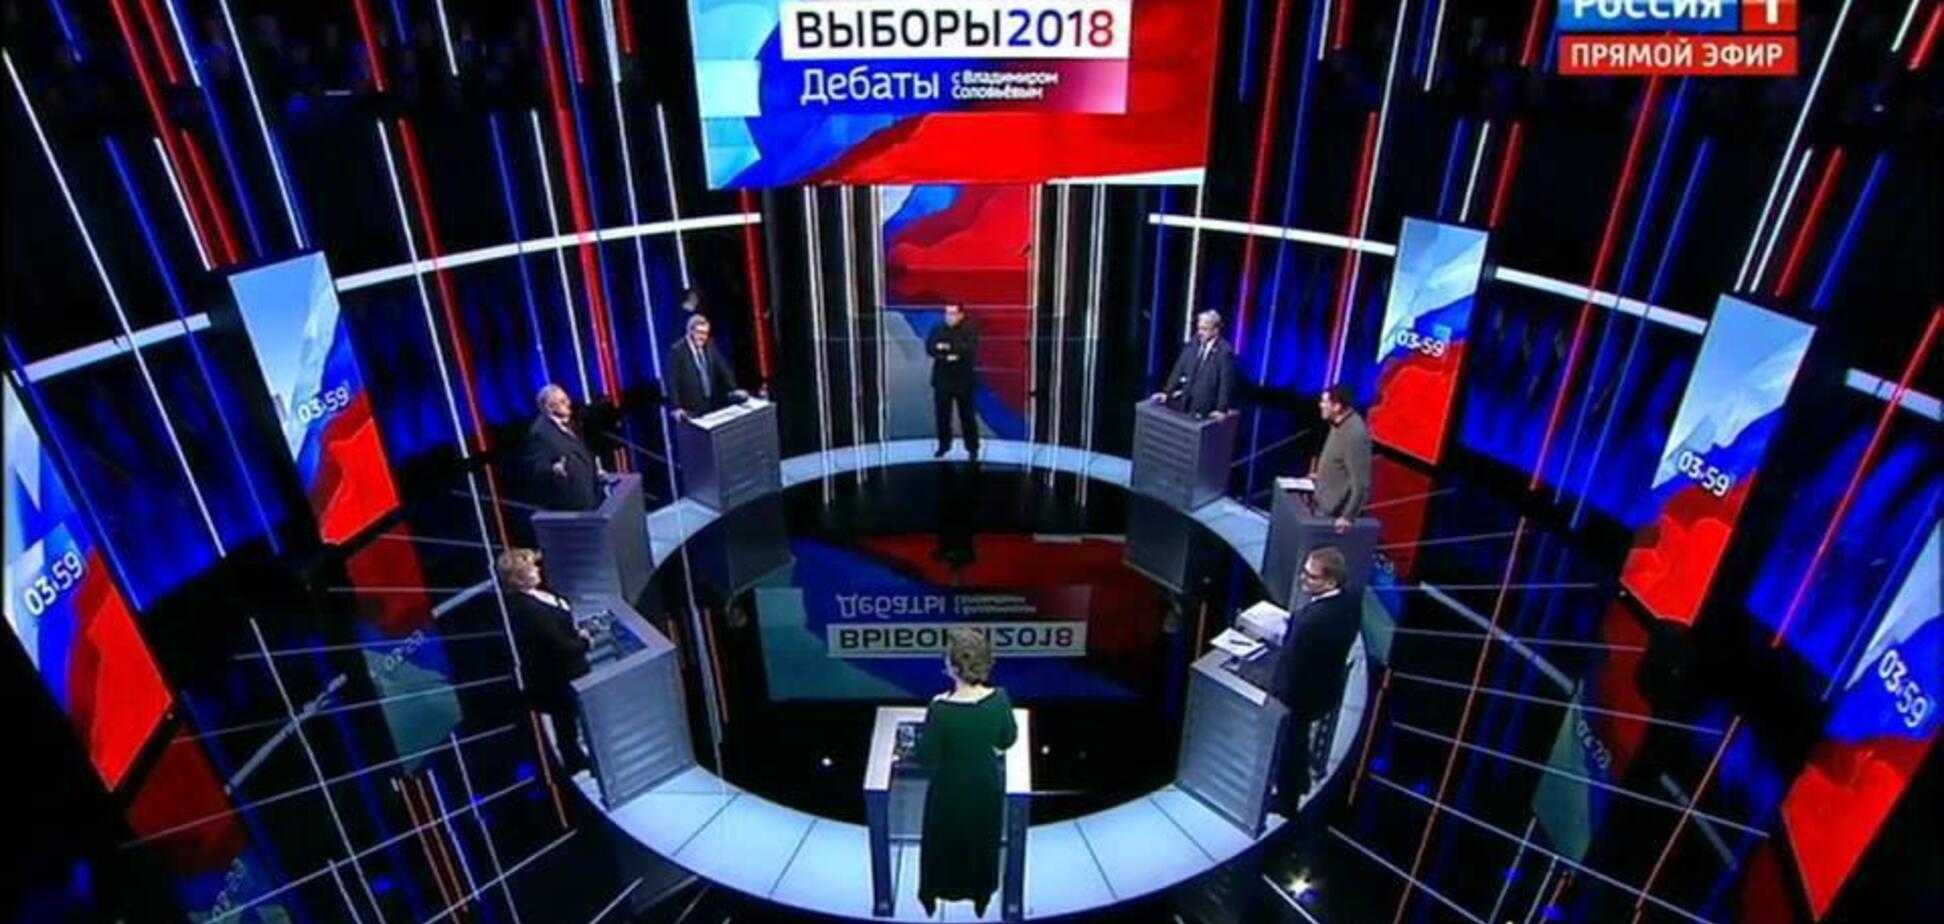 'Щелепу, с*ка, зламаю': конкурент Путіна накинувся на журналіста під час дебатів